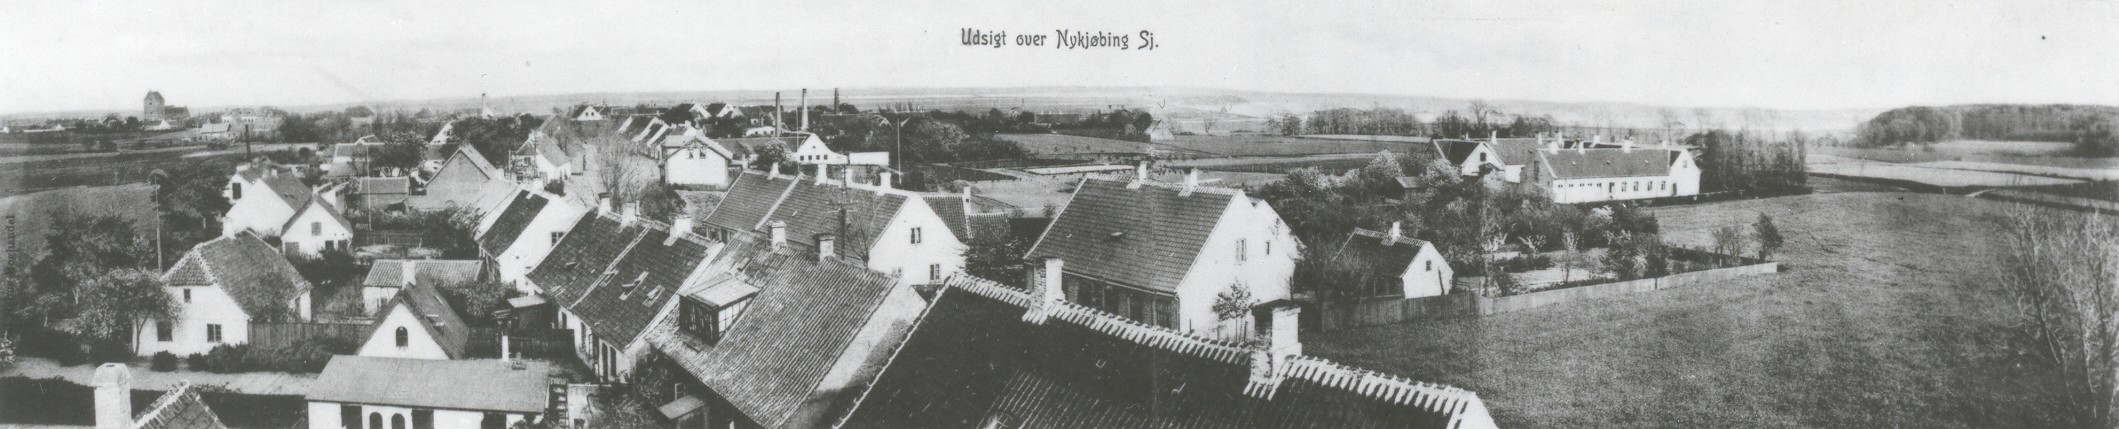 Udsigt over Nykøbing Sj. 1907 (B90038)